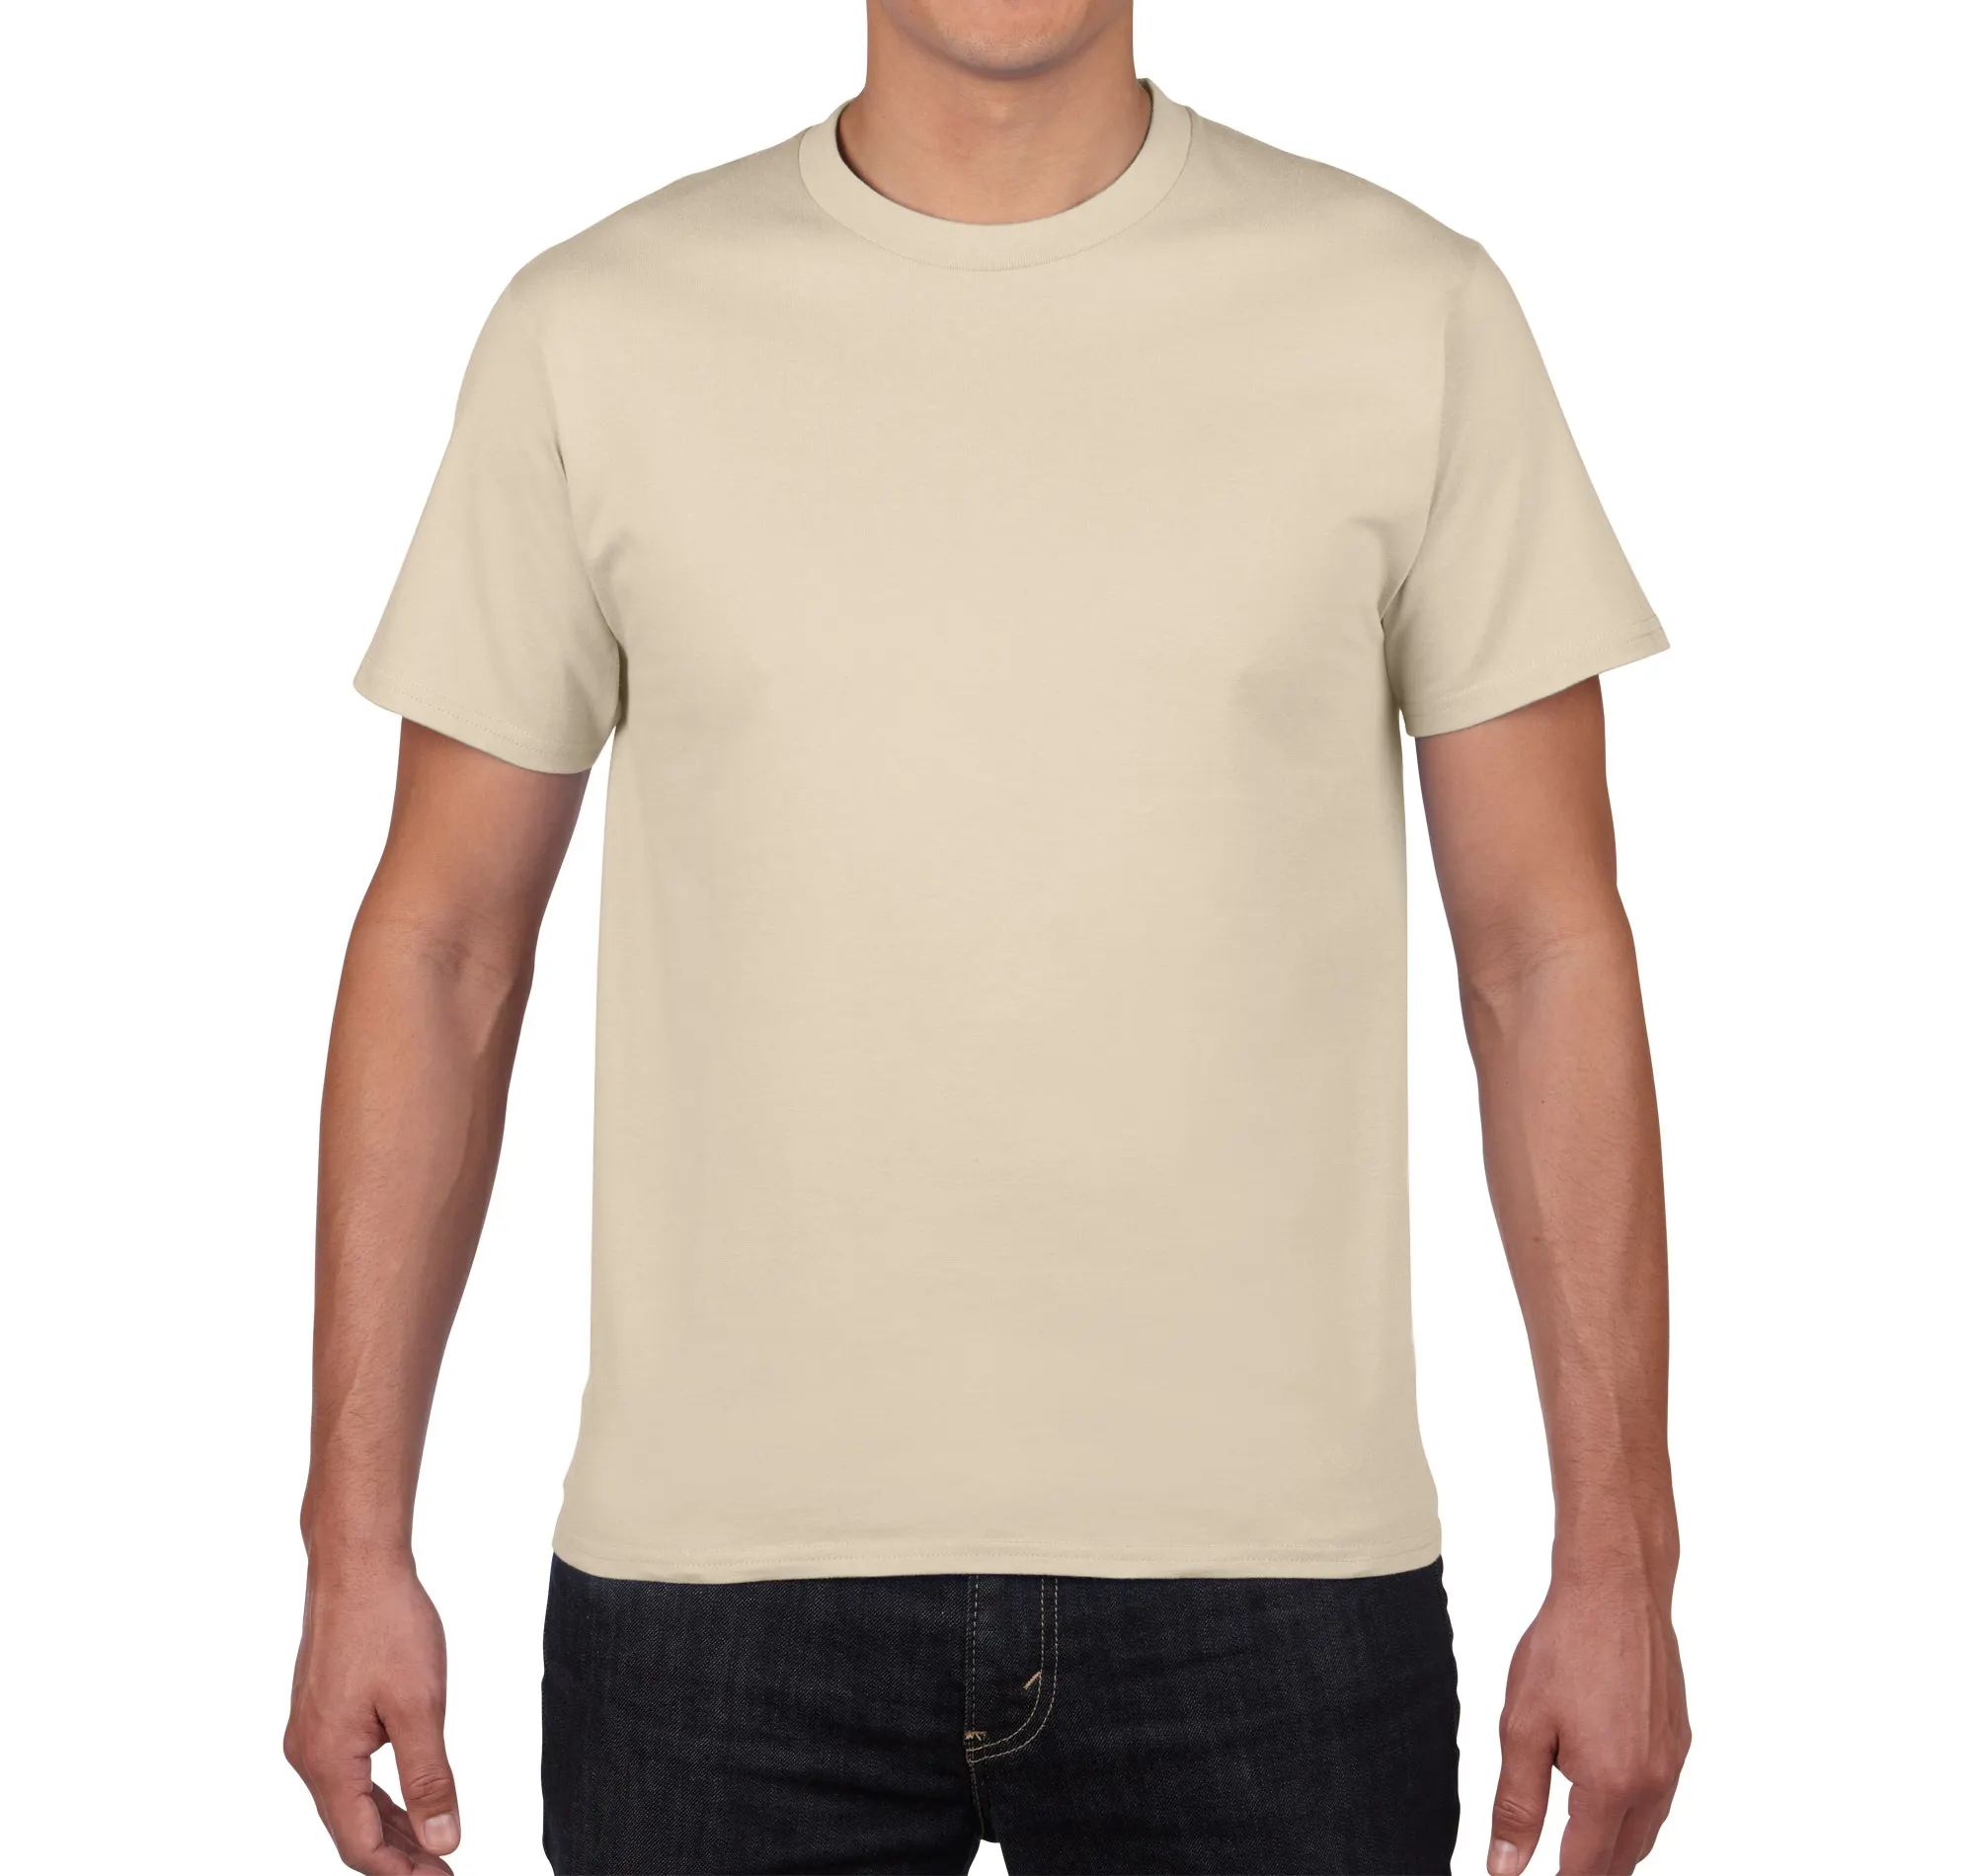 고품질 남자 옷 t 셔츠 사용자 정의 t 셔츠 인쇄 빈 티셔츠 무료 라벨 및 태그 사용자 정의 인쇄 100% 링 회전면